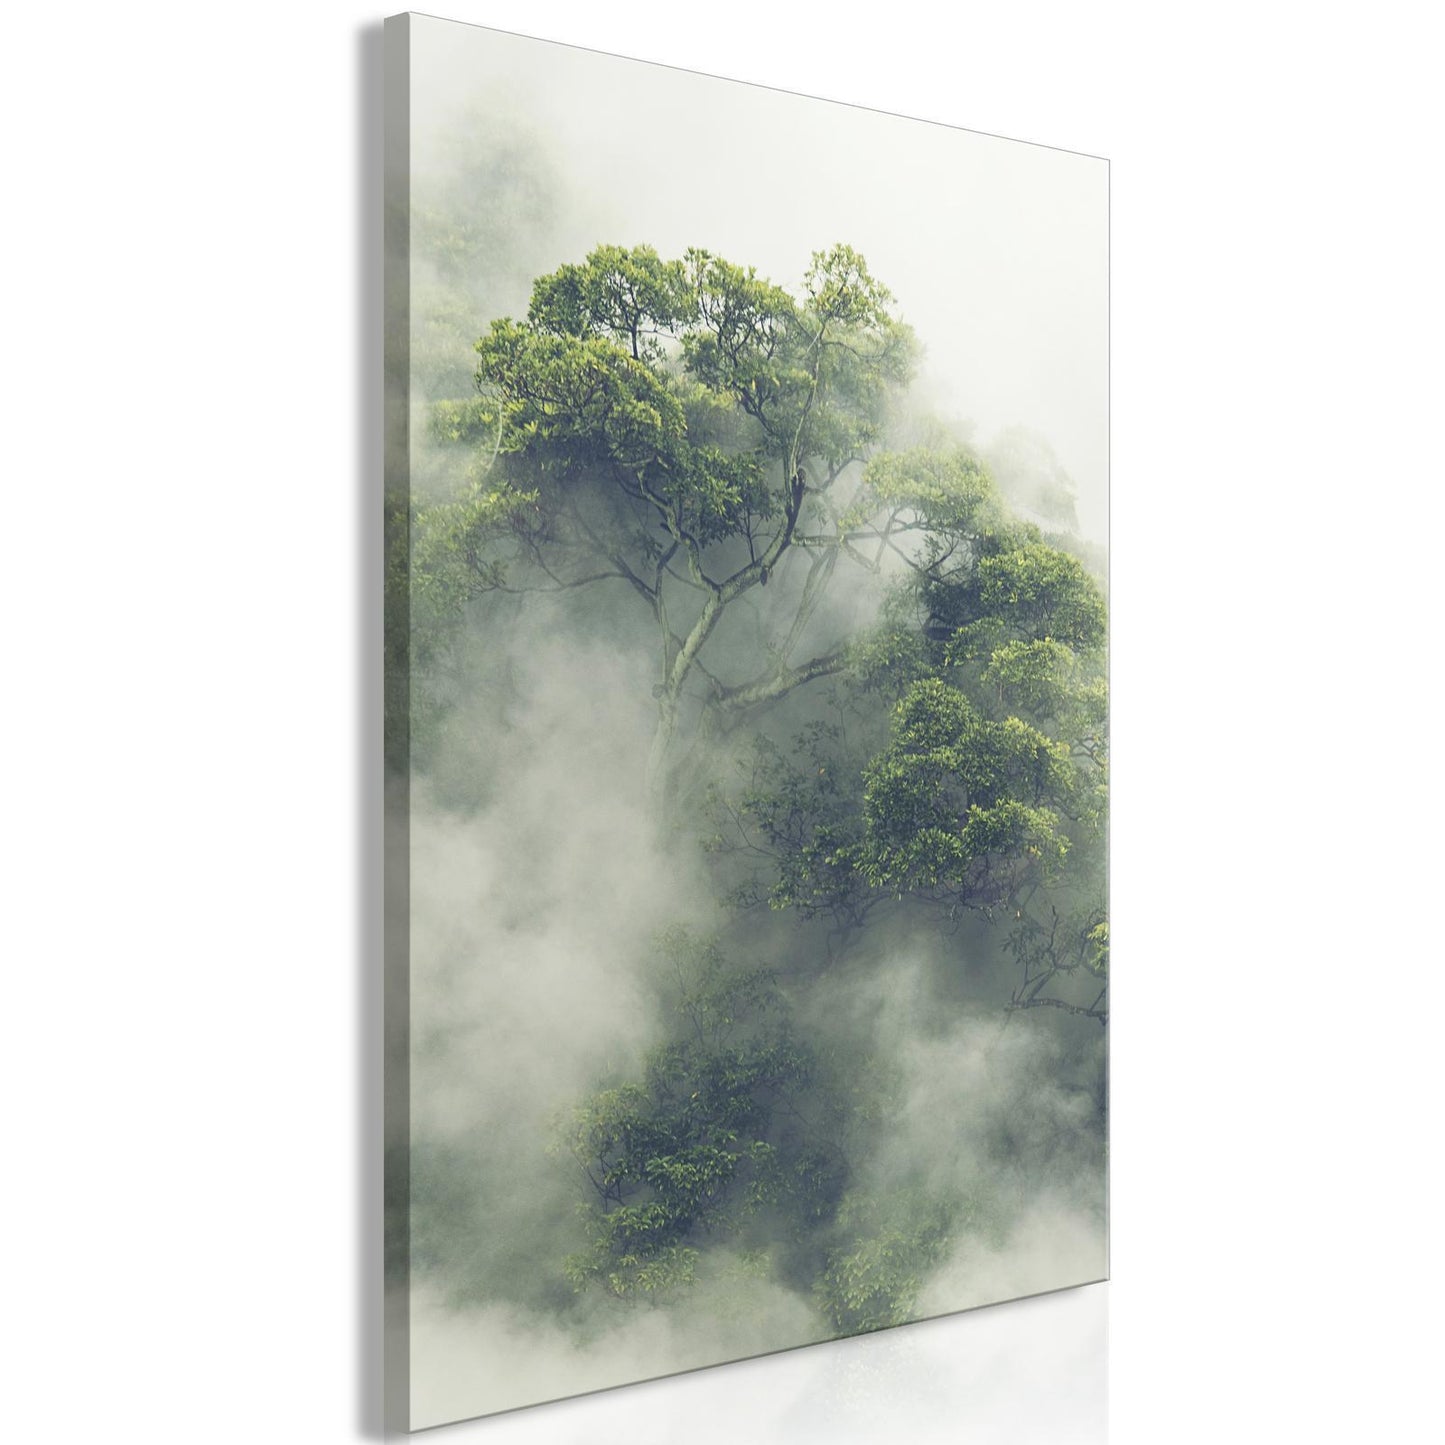 Schilderij - Foggy Amazon (1 Part) Vertical